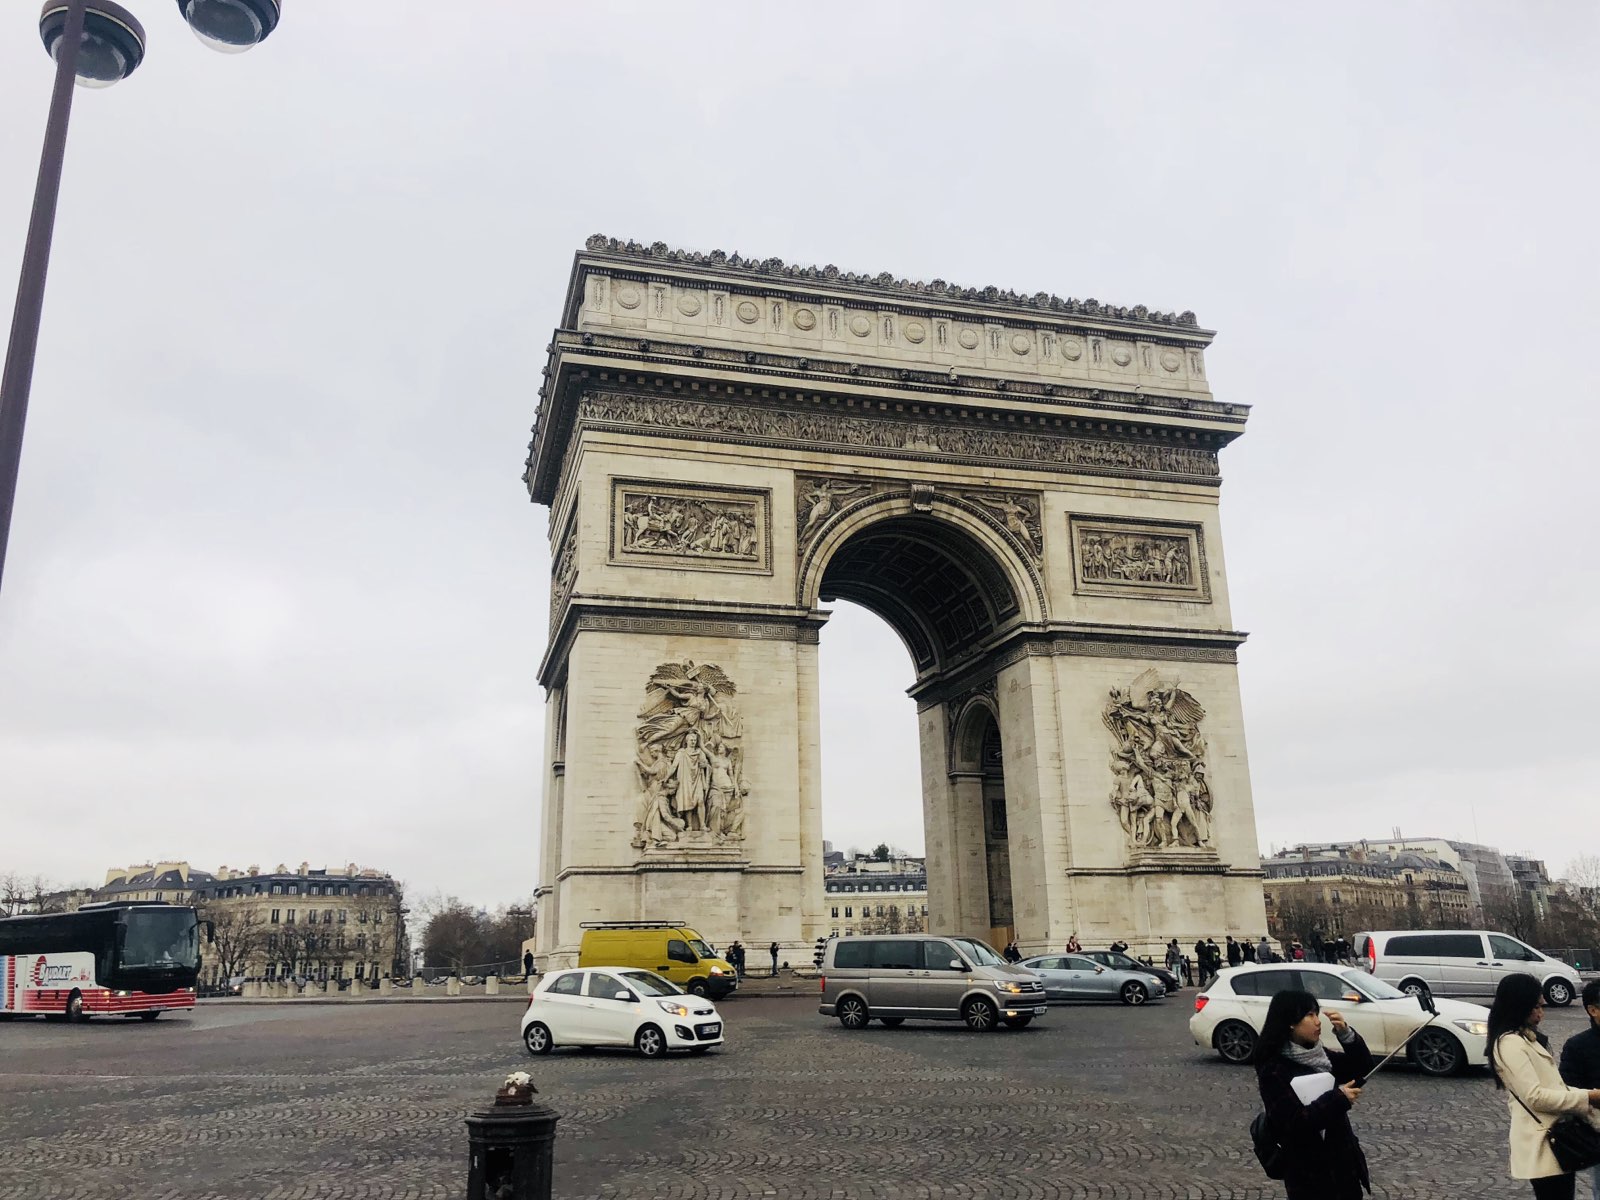 从凯旋门看四周 鸟瞰巴黎的感觉 车水马龙 又独特与国内 巴黎真的非常美